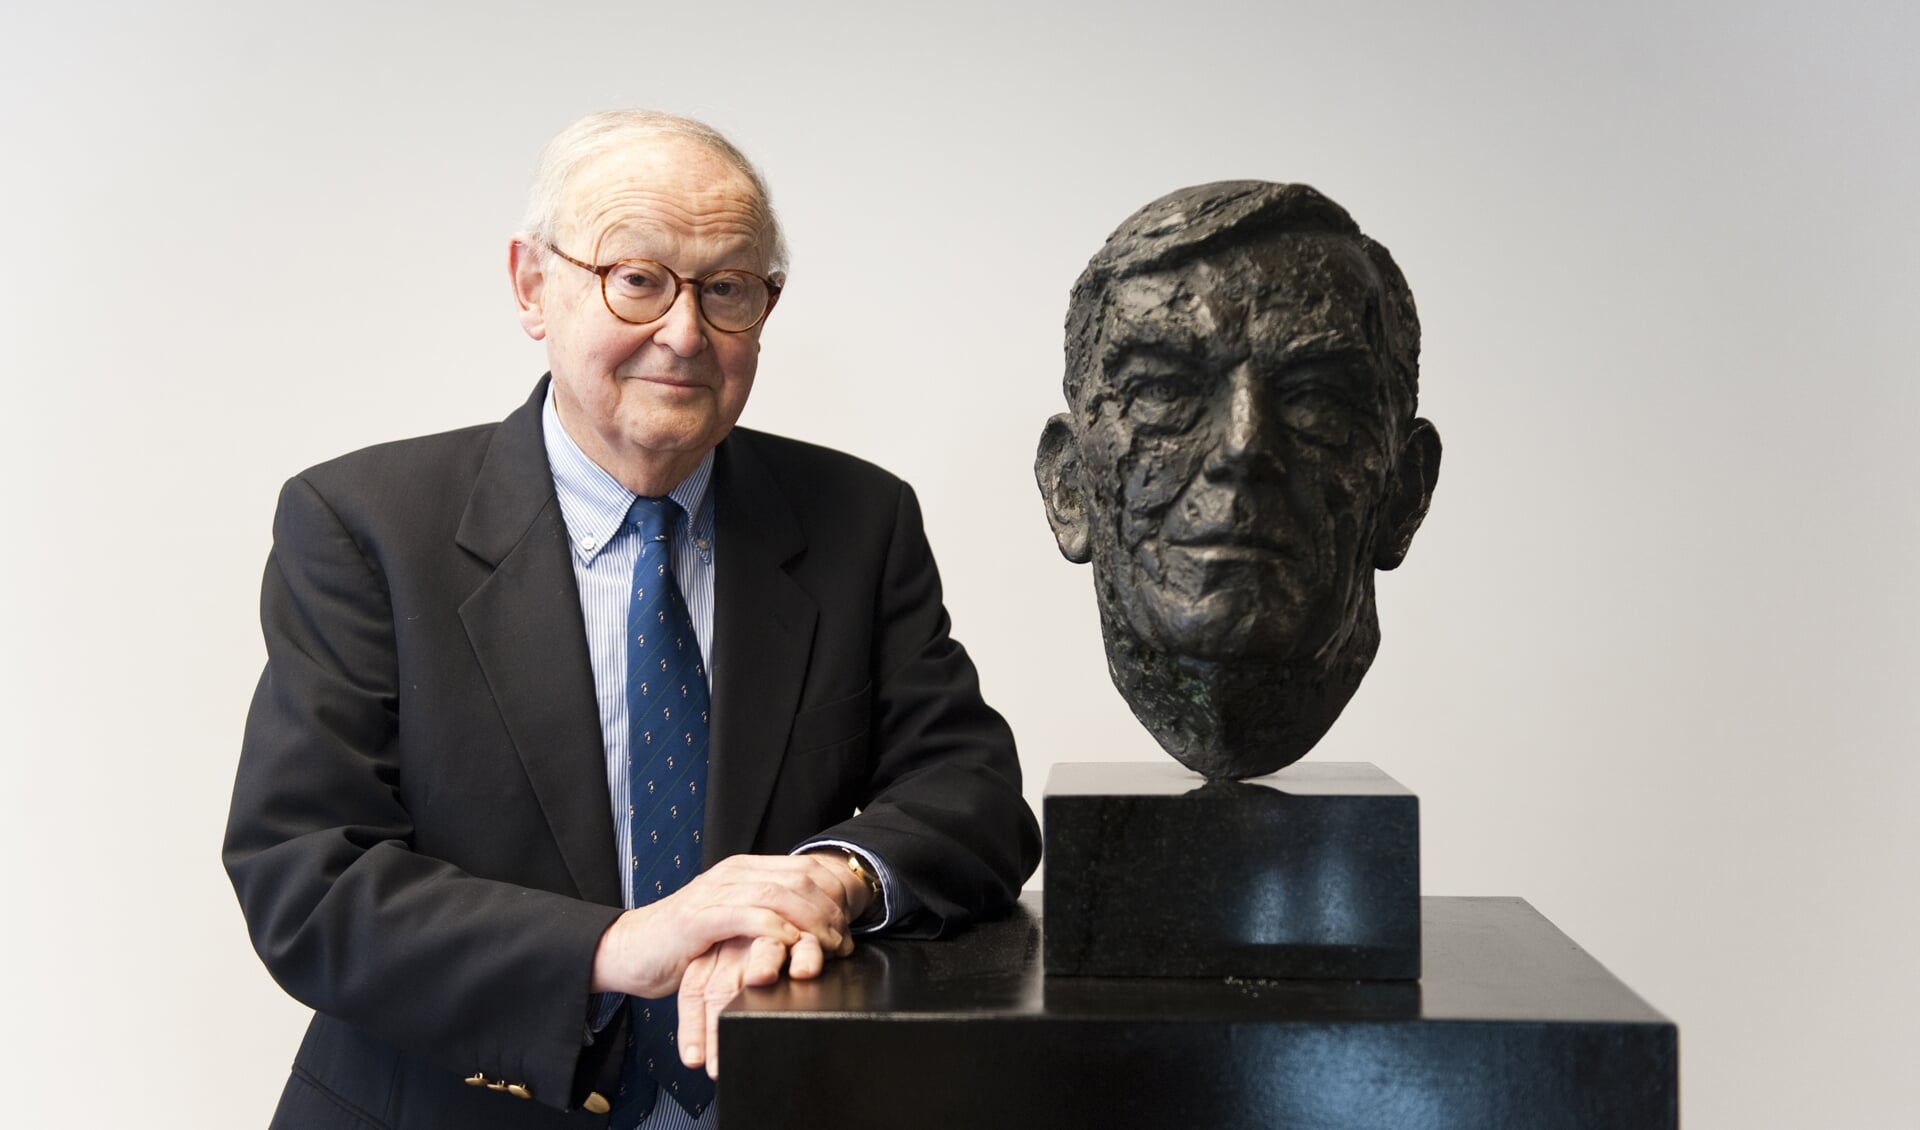 Biograaf Paul Weller bij de buste van Alfred Mozer die door Prinses Beatrix werd gemaakt en onthuld. Foto: Jessica de Lepper